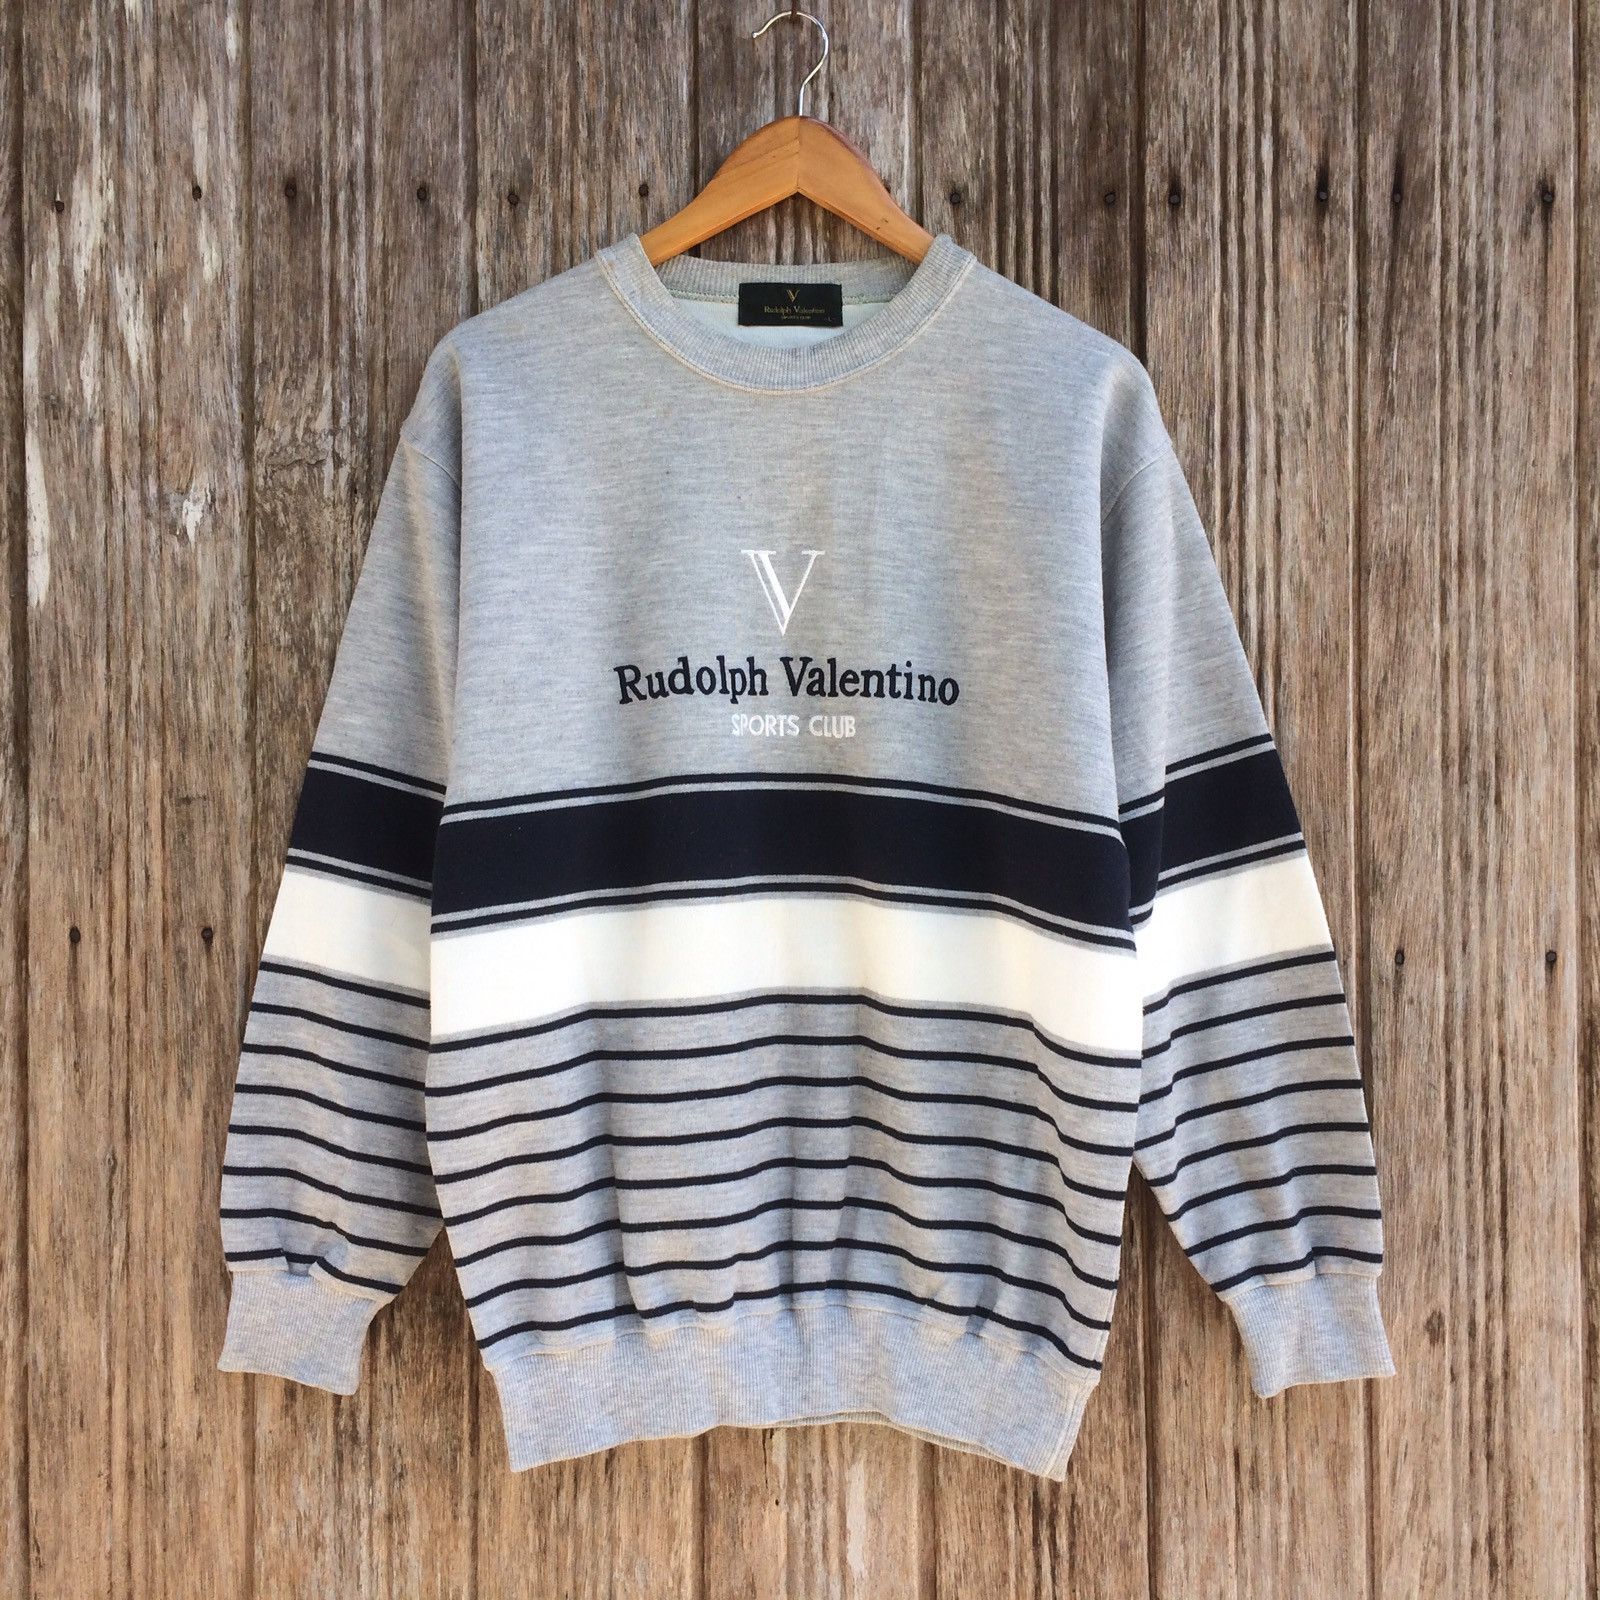 Valentino Rudolph Valentino Club Sweatshirt Pullover Rare with stripe Pop Design Size L | Grailed